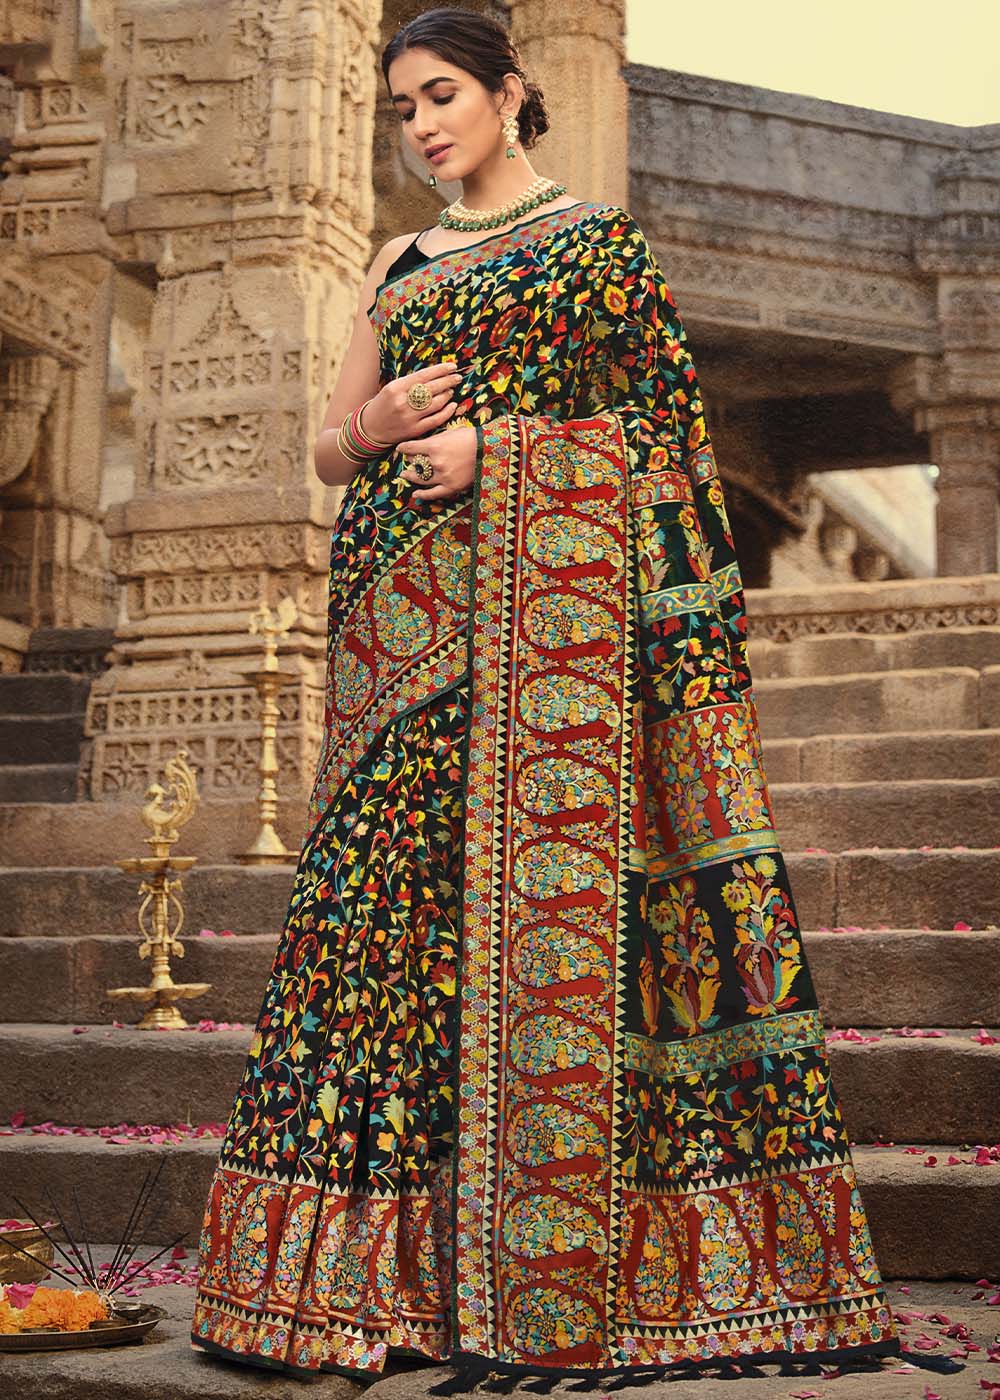 Soot Black Banarasi Kora Silk Saree with Pashmina Weaving & Zari Border Pallu